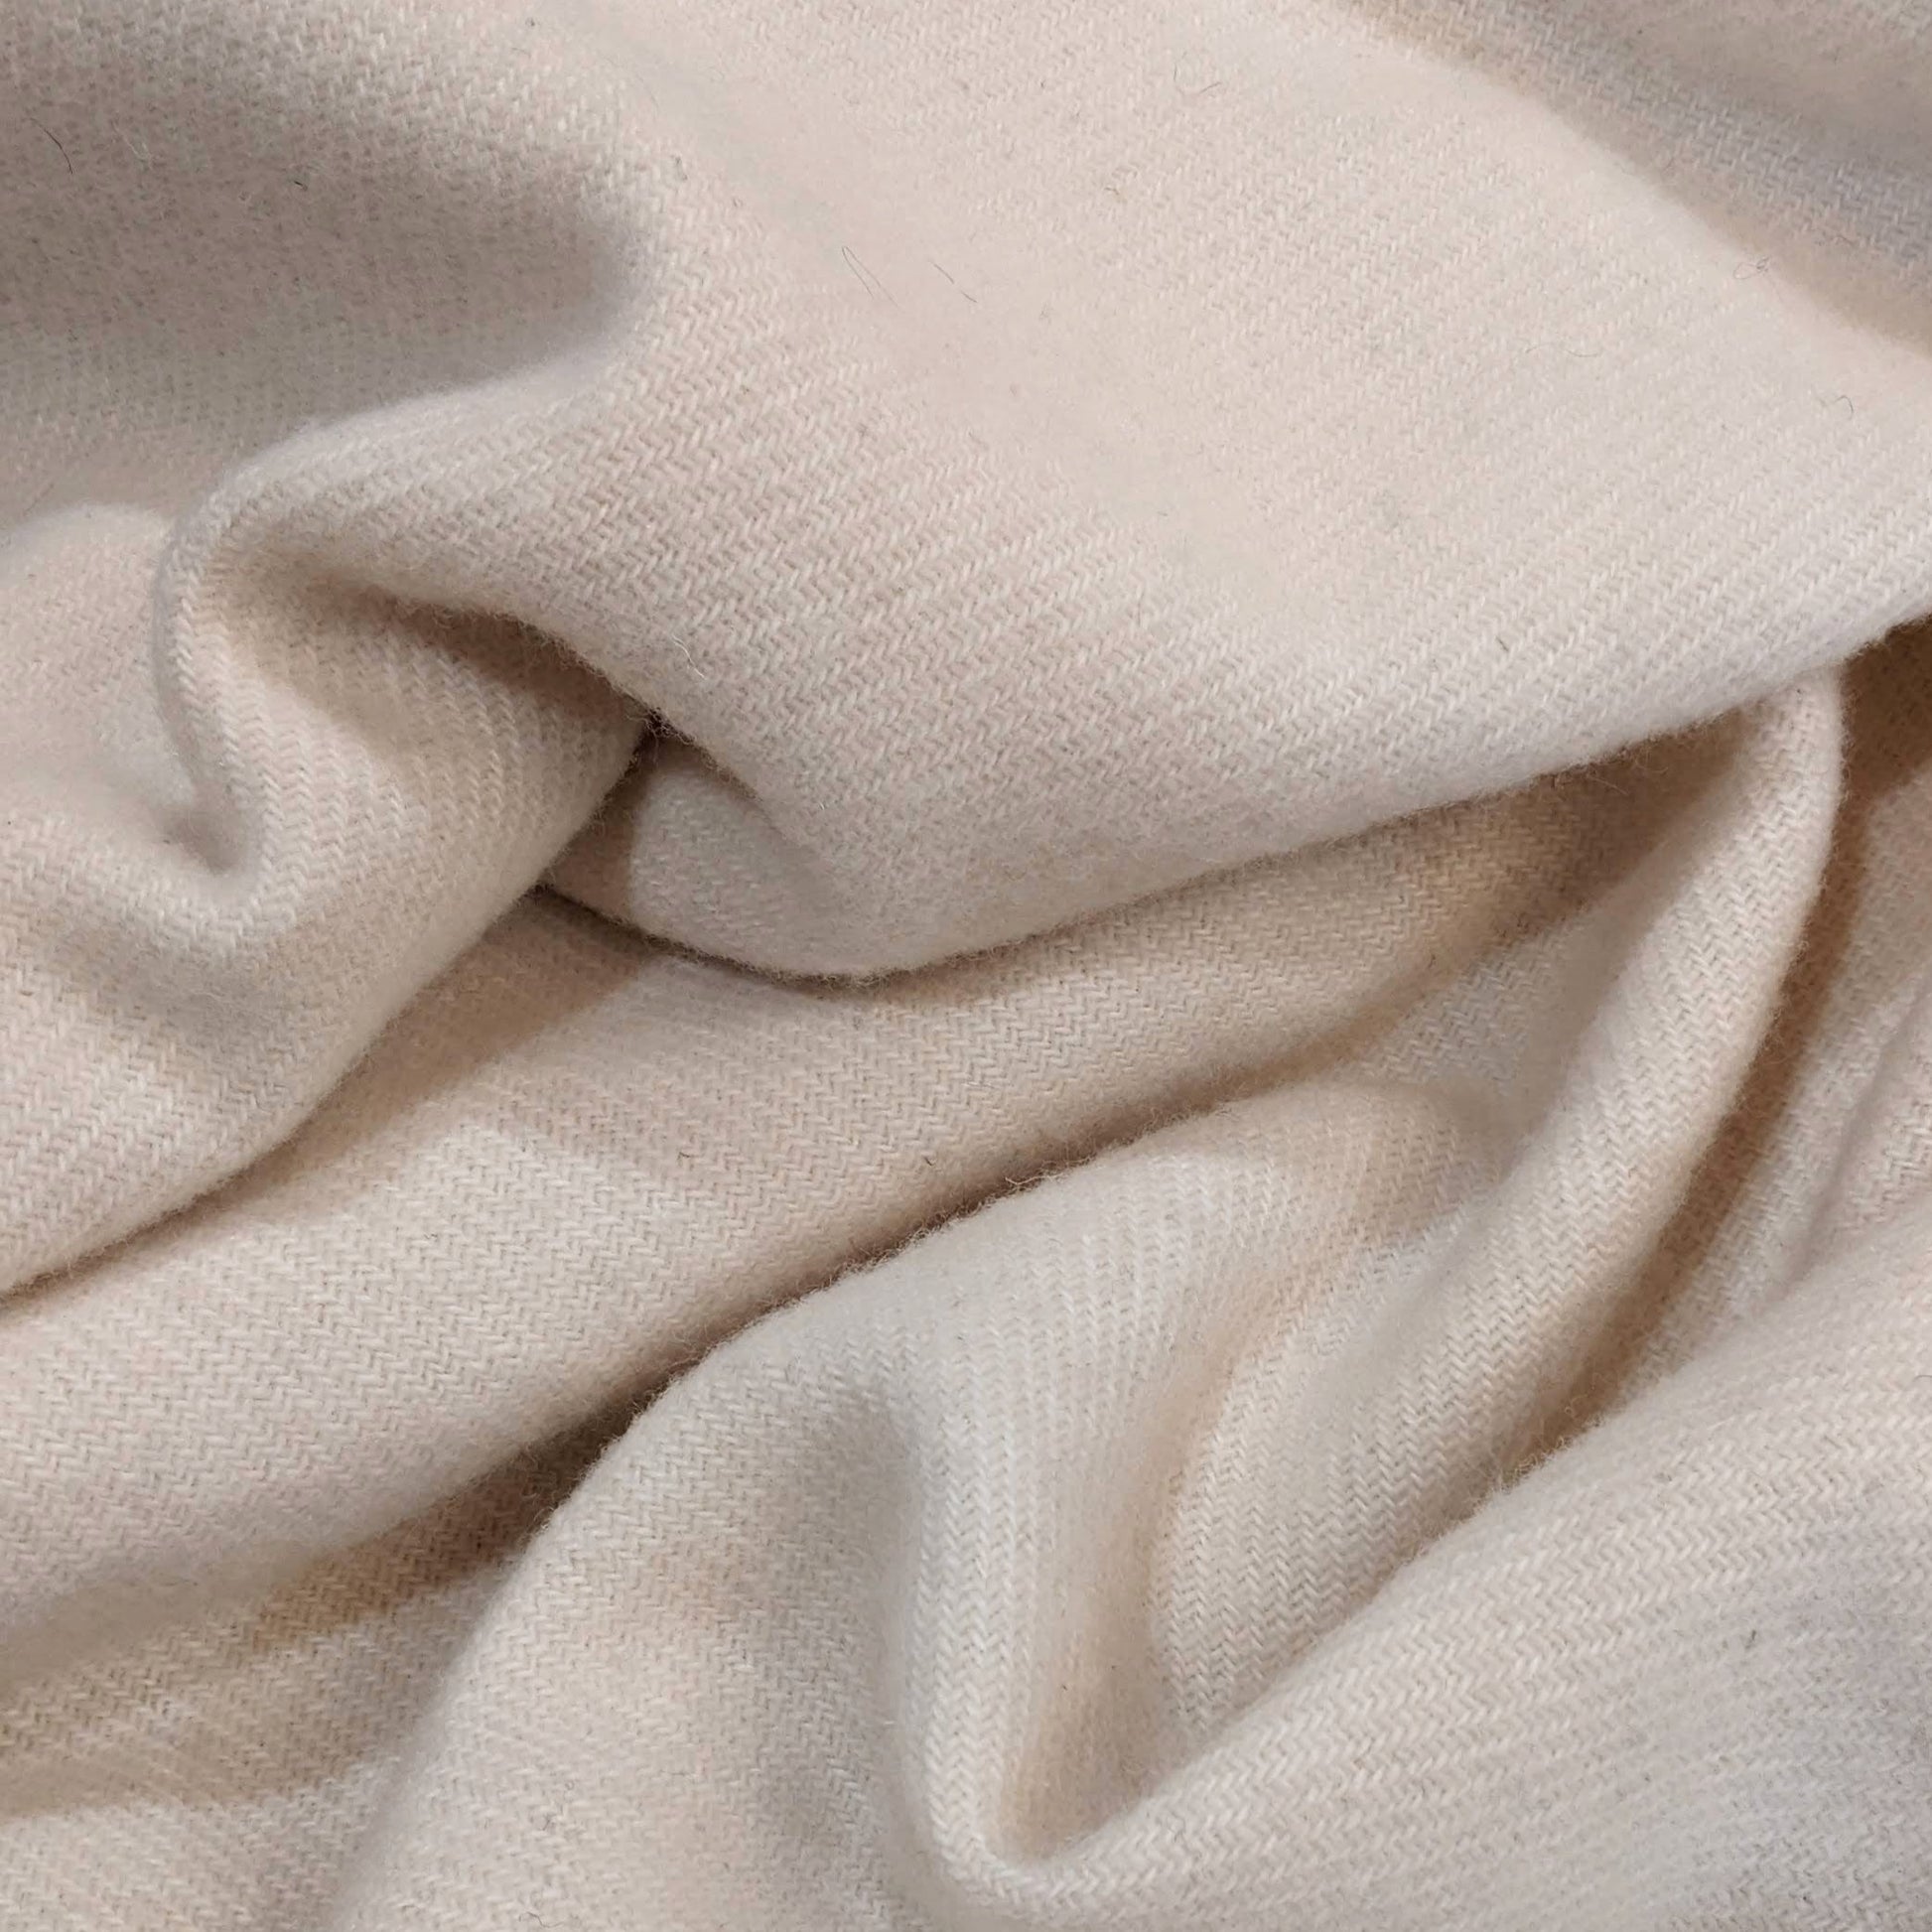 Wool Blanket